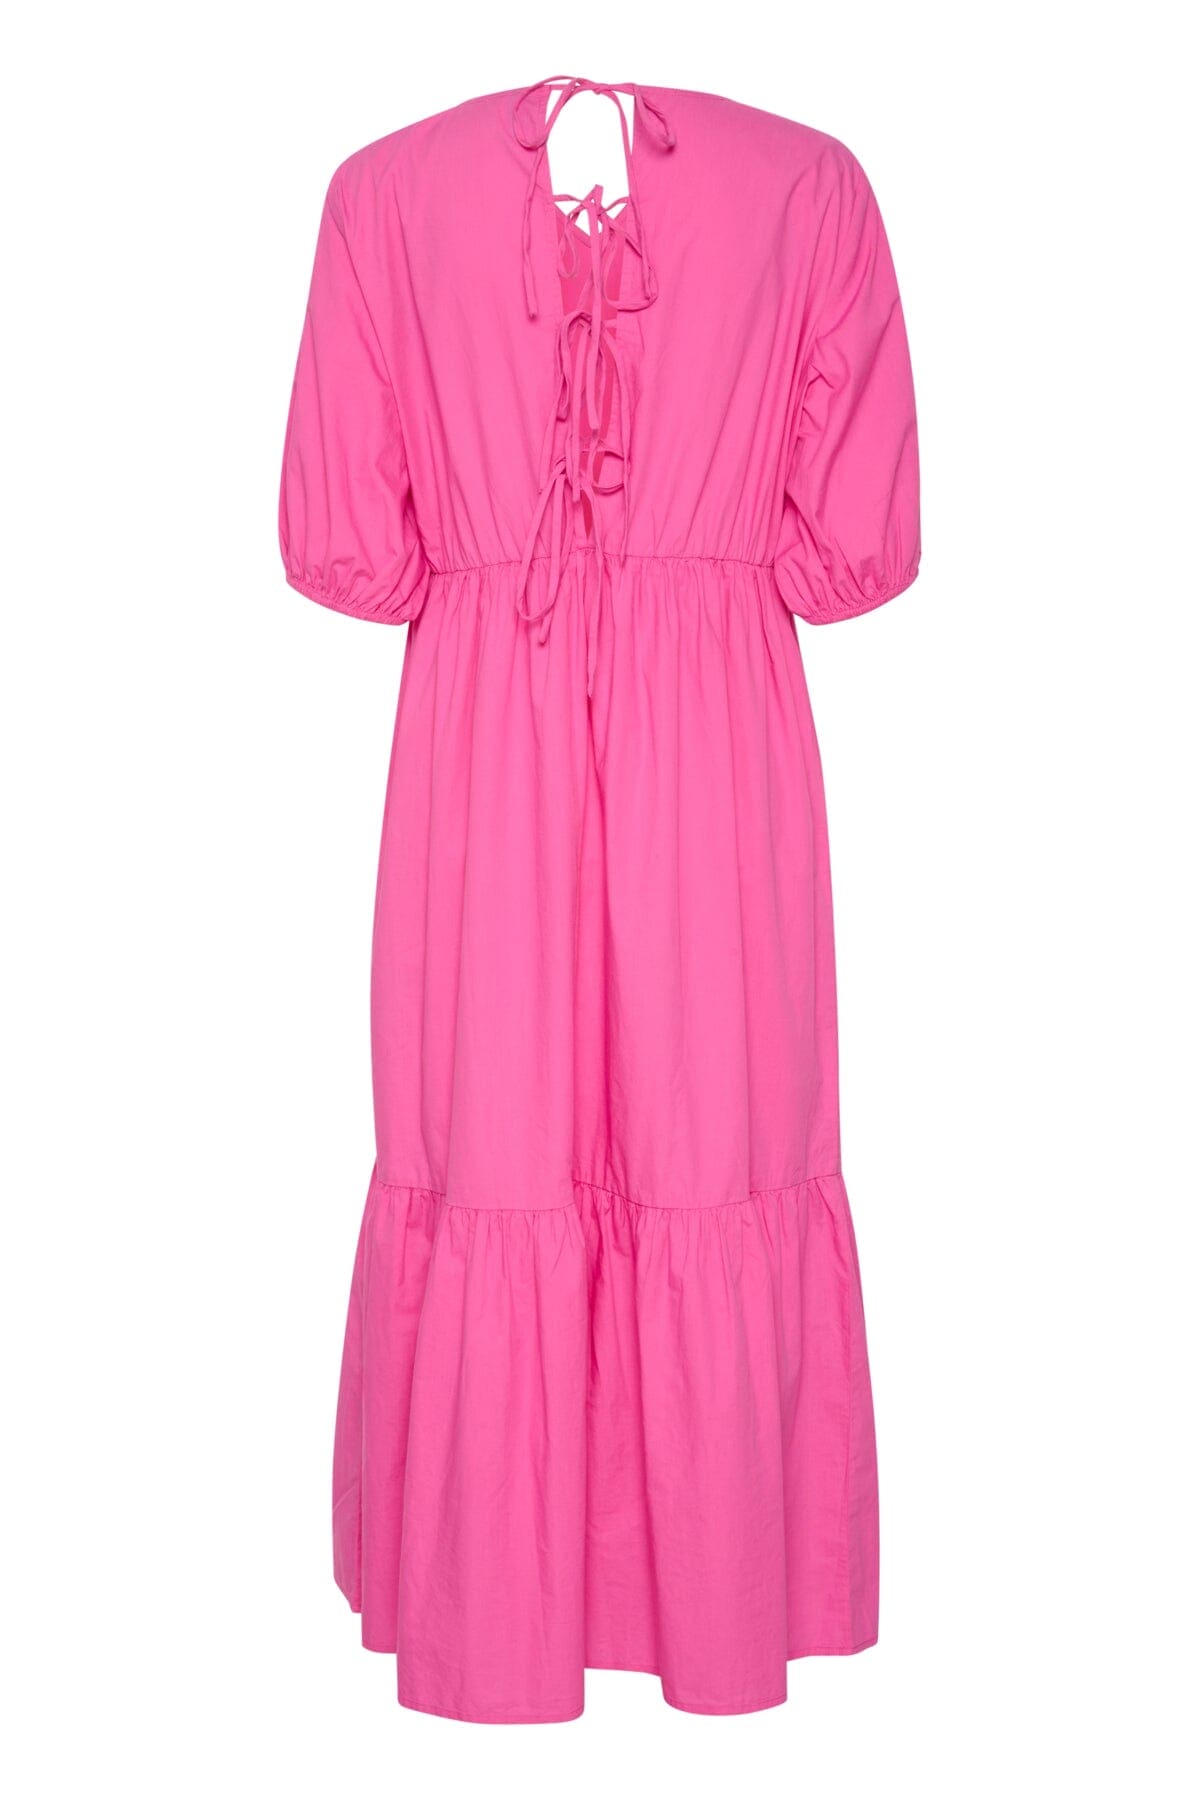 Olena Midi Dress in Phlox Pink Midi Dress Culture 